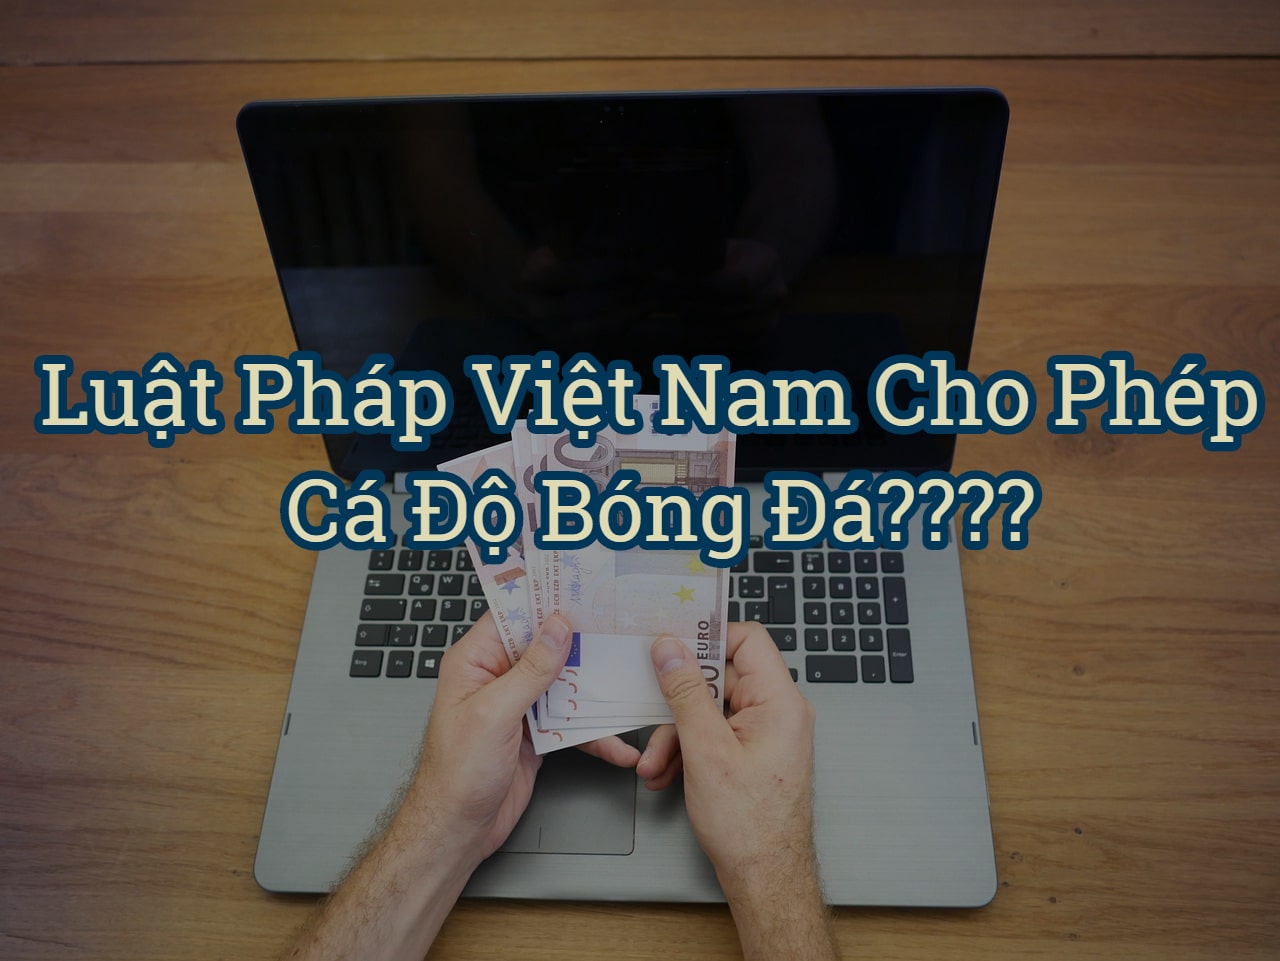 Luật pháp Việt Nam cho phép cá độ bóng đá trực tuyến